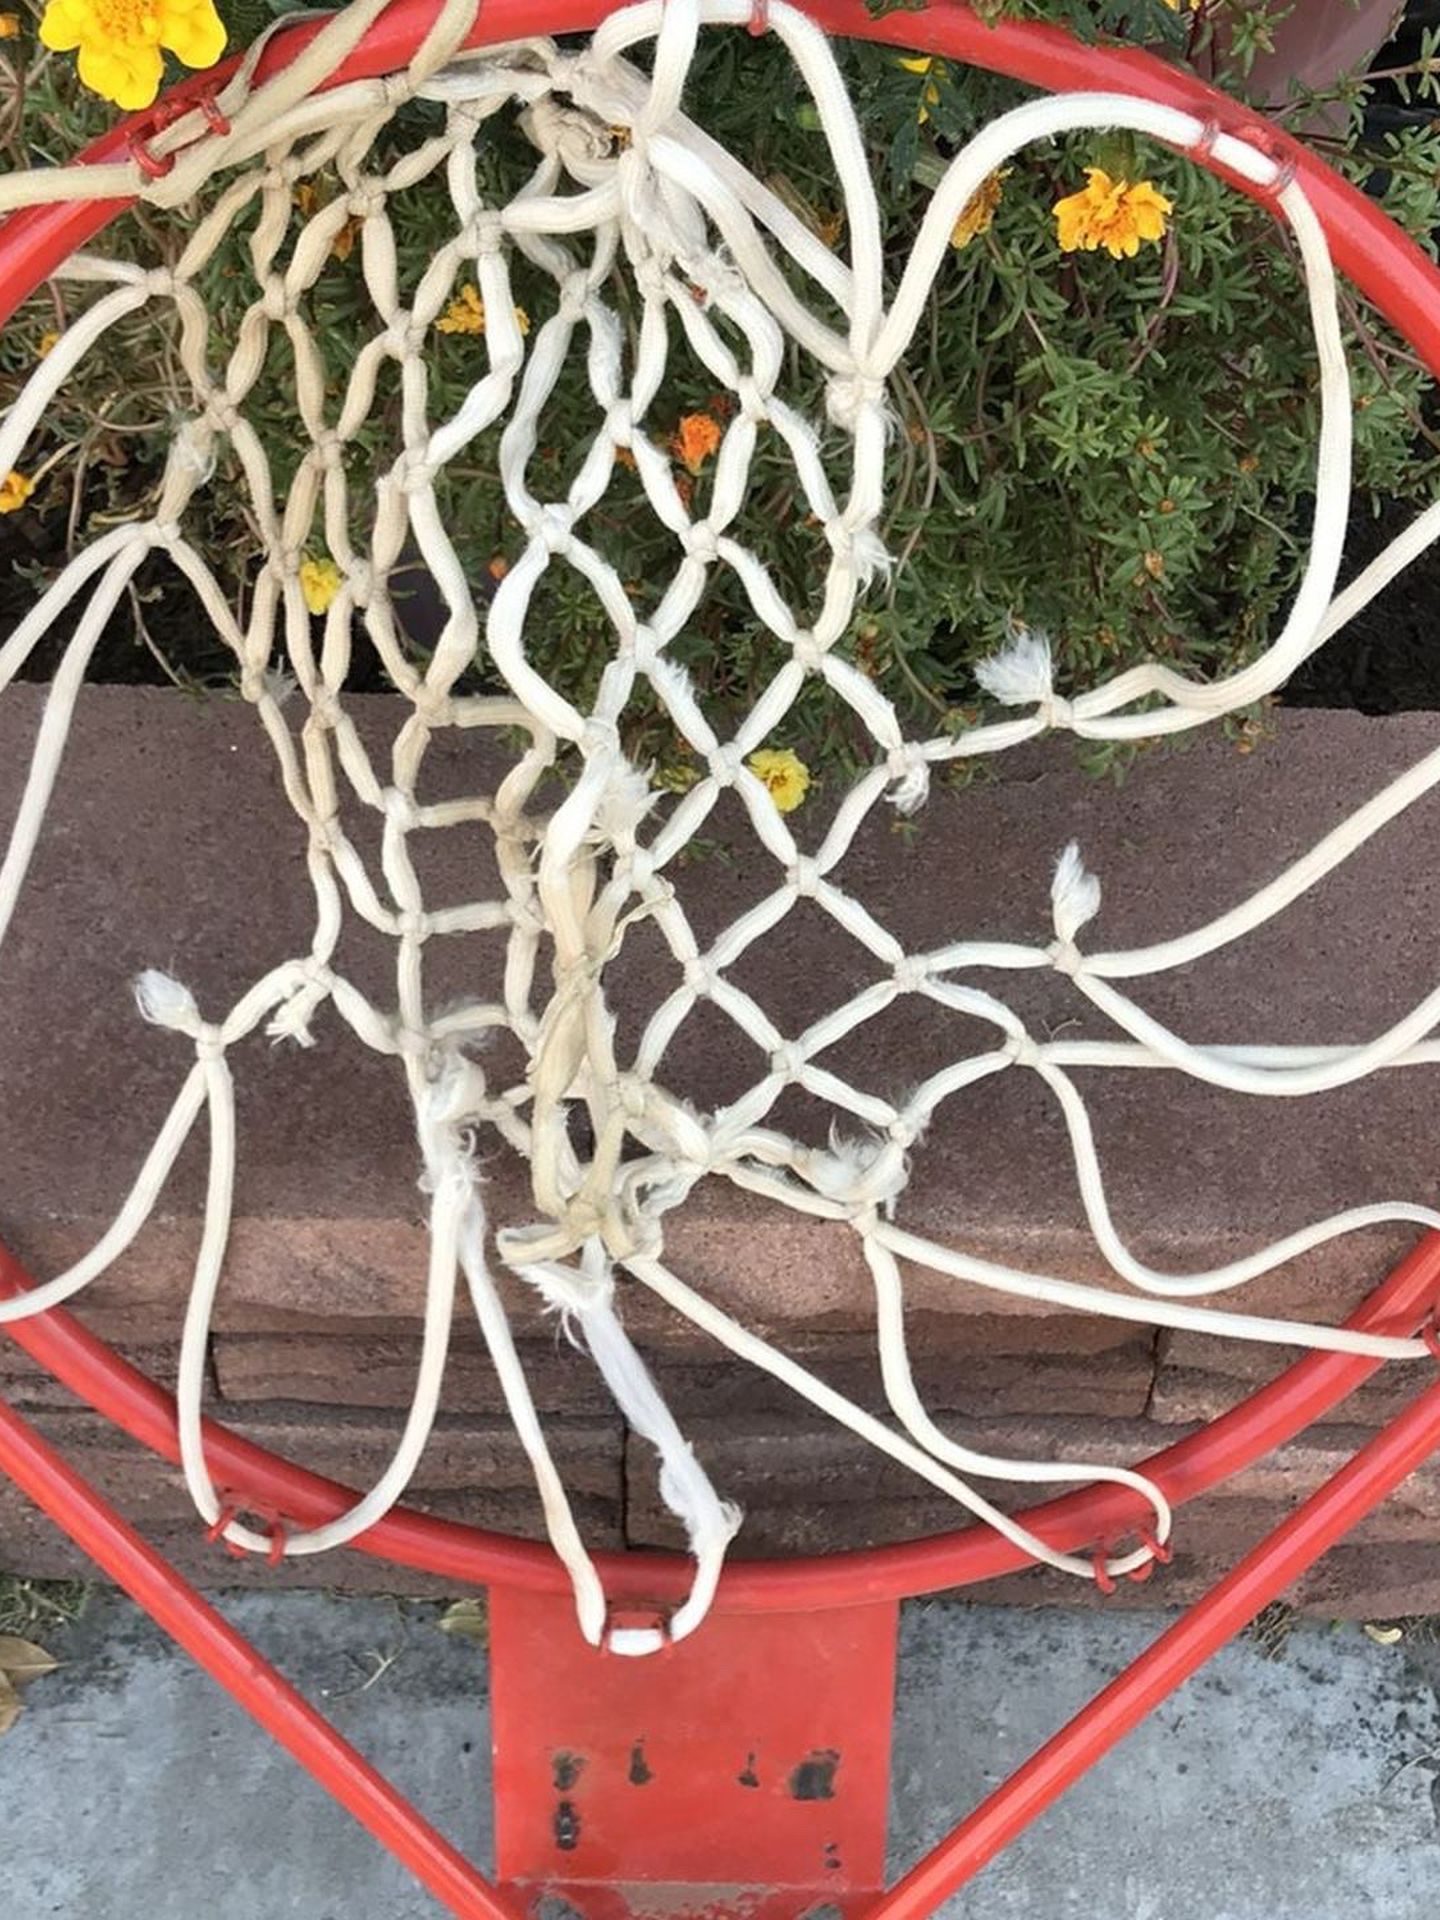 SALE- Basketball Hoop With Wall Mountable Backboard- Complete